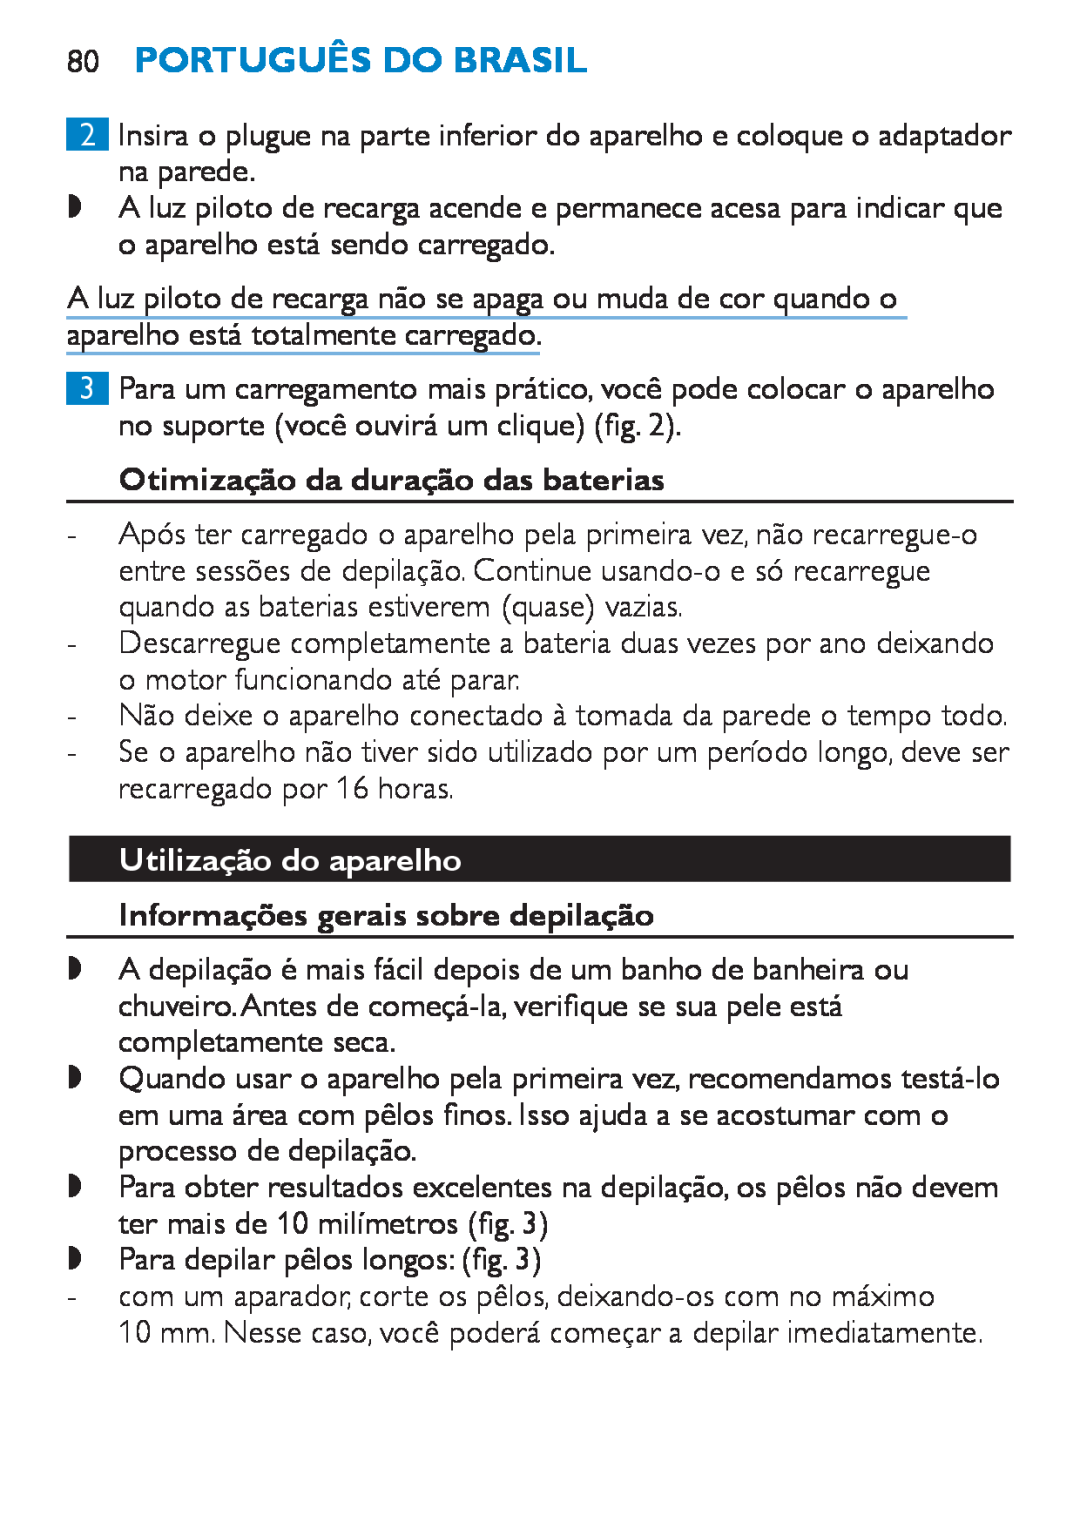 Philips HP6490 manual 80Português do Brasil, Otimização da duração das baterias, Utilização do aparelho 